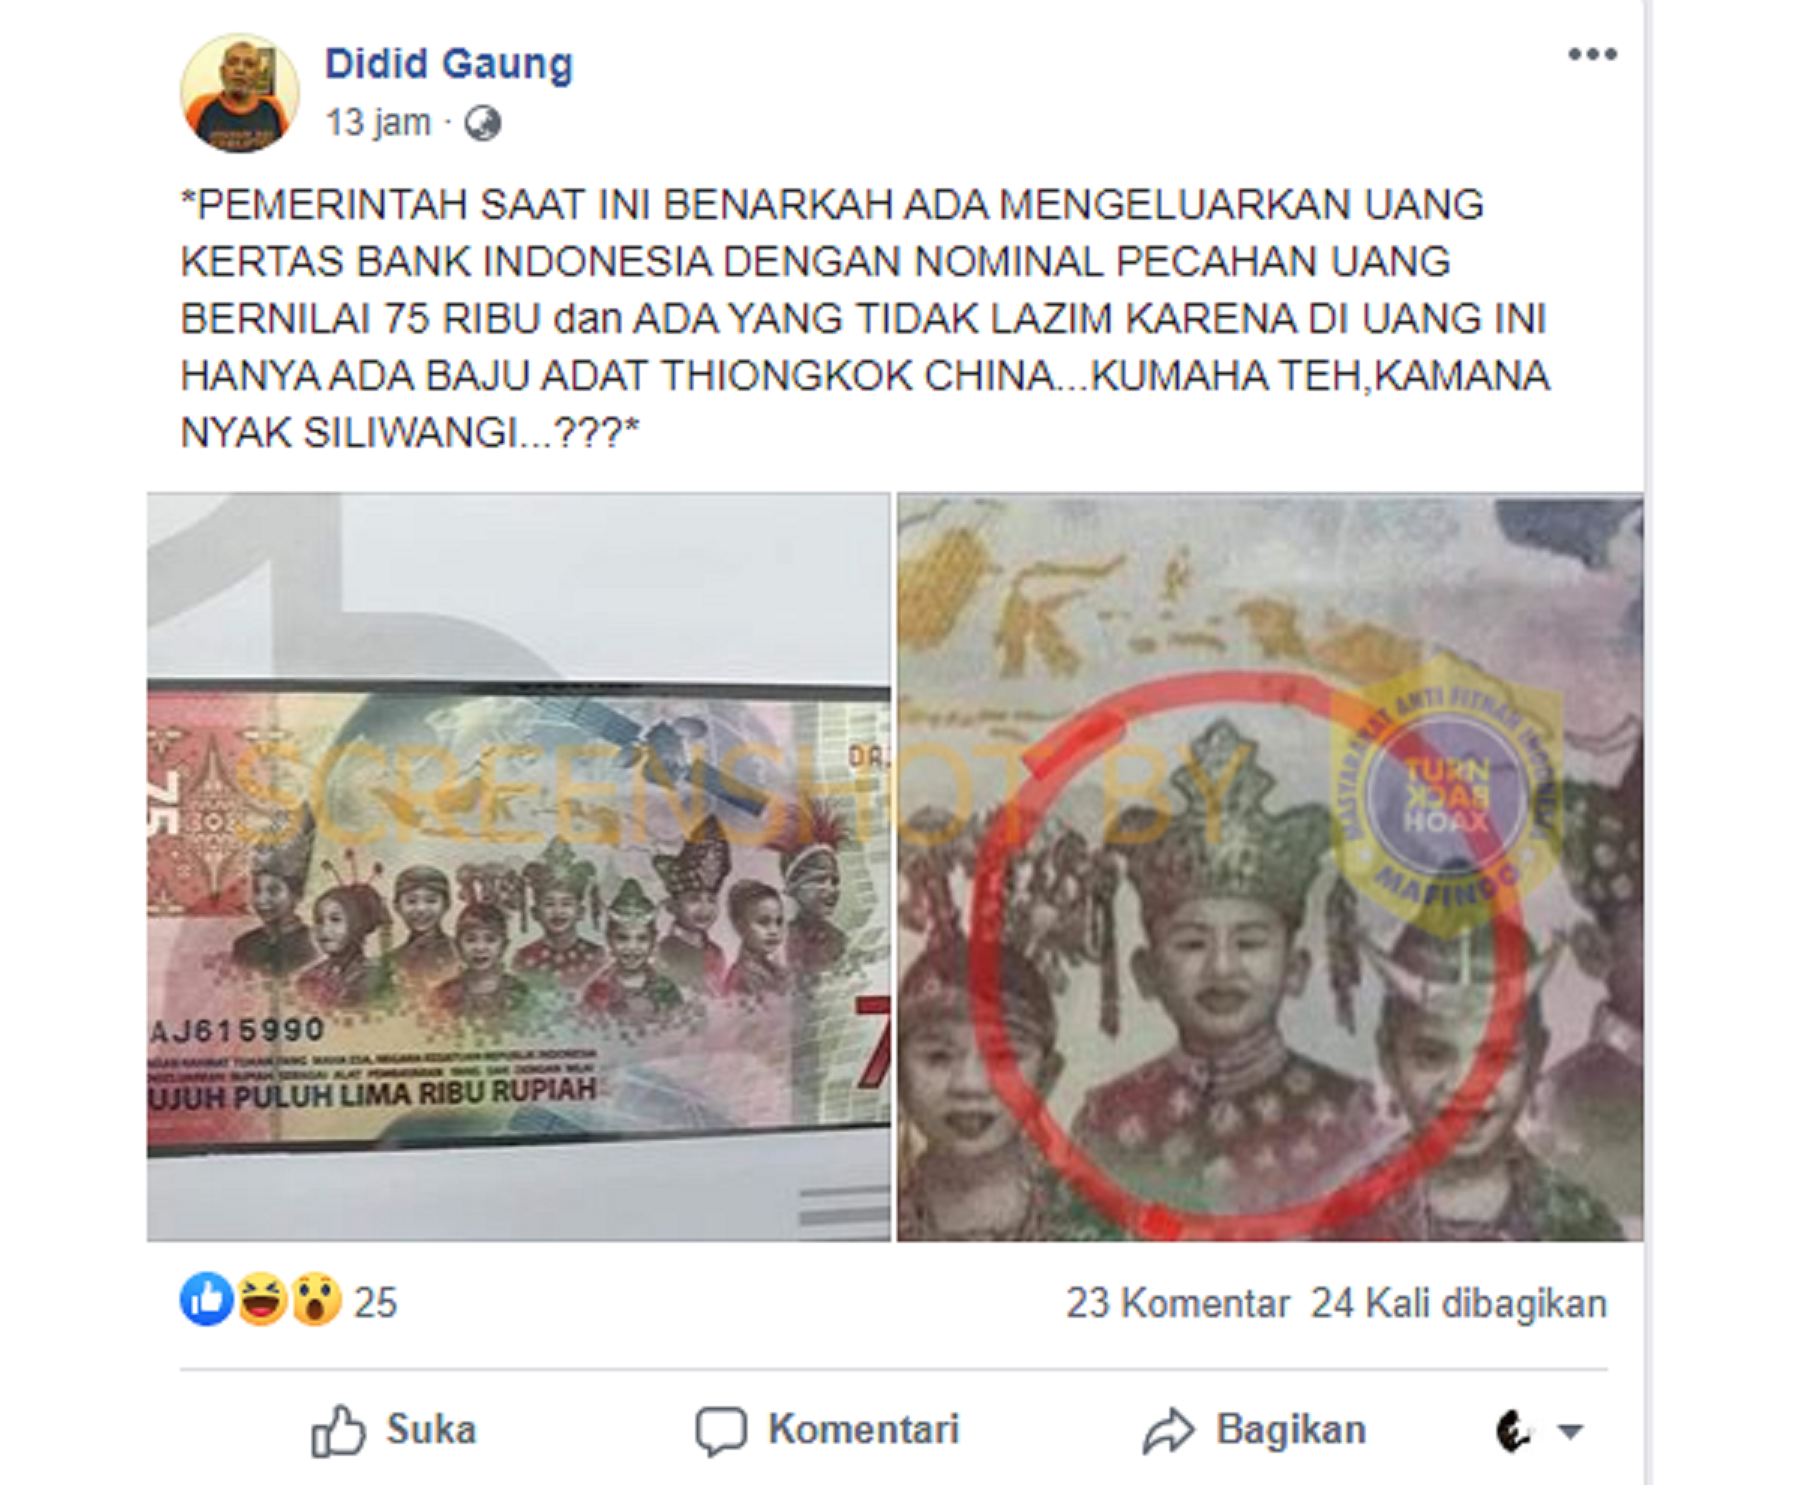 tangkap layar postingan salah satu pengguna facebook yang menyatakan ada baju adat china di dalam gambar uang pecahan Rp 75 ribu.